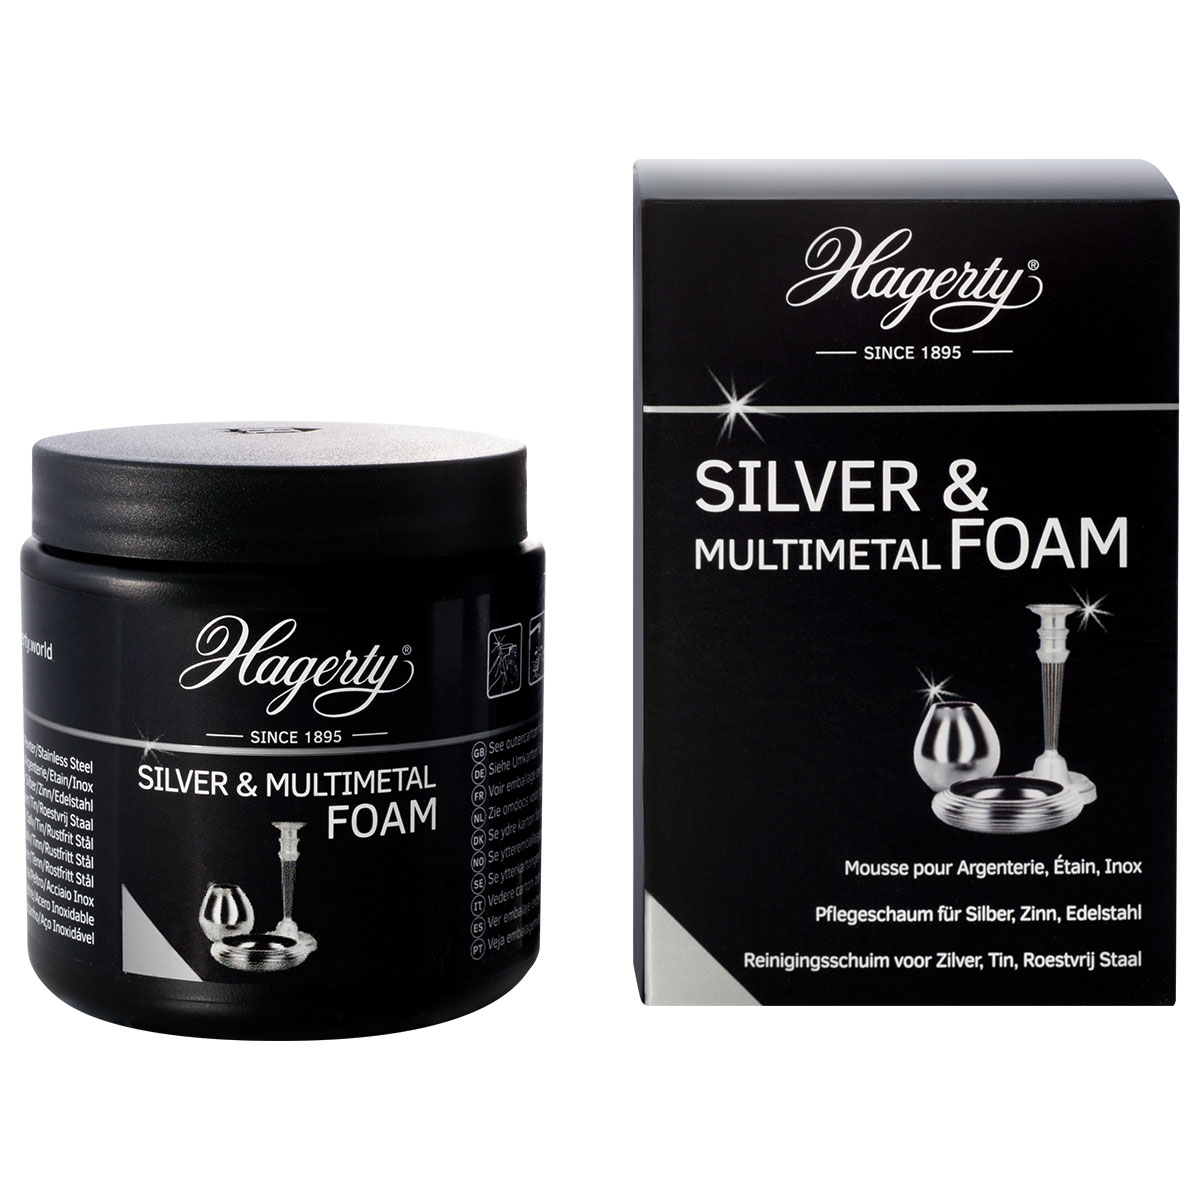 Hagerty Silver & Multimetal Foam, pâte moussante pour argent, étain et inox, 185 g